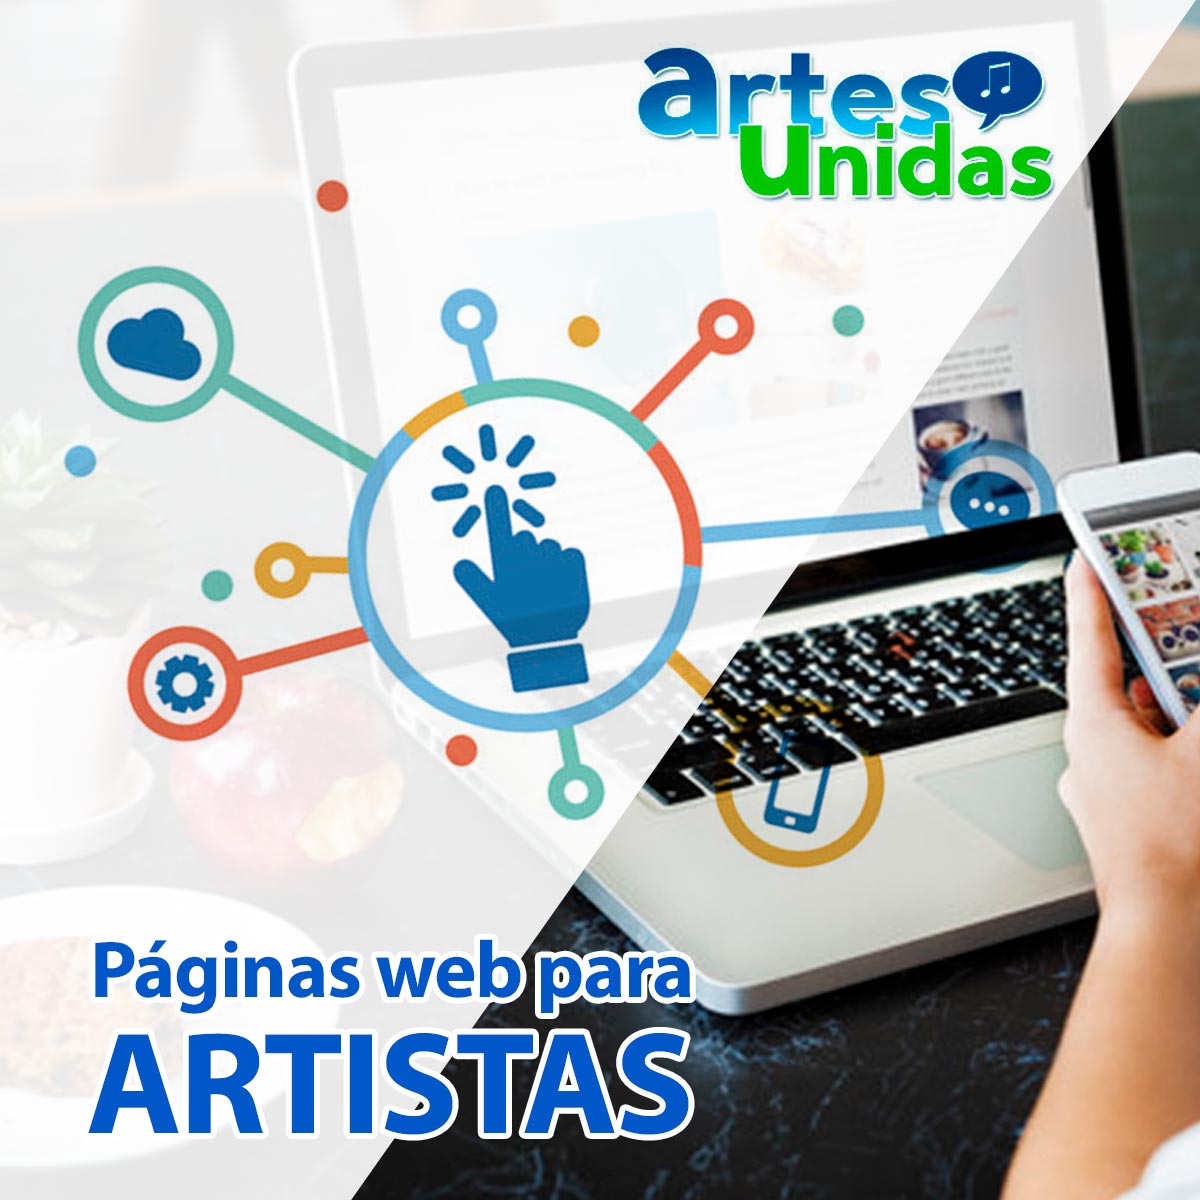 Páginas Web para Artistas - ArtesUnidas.com